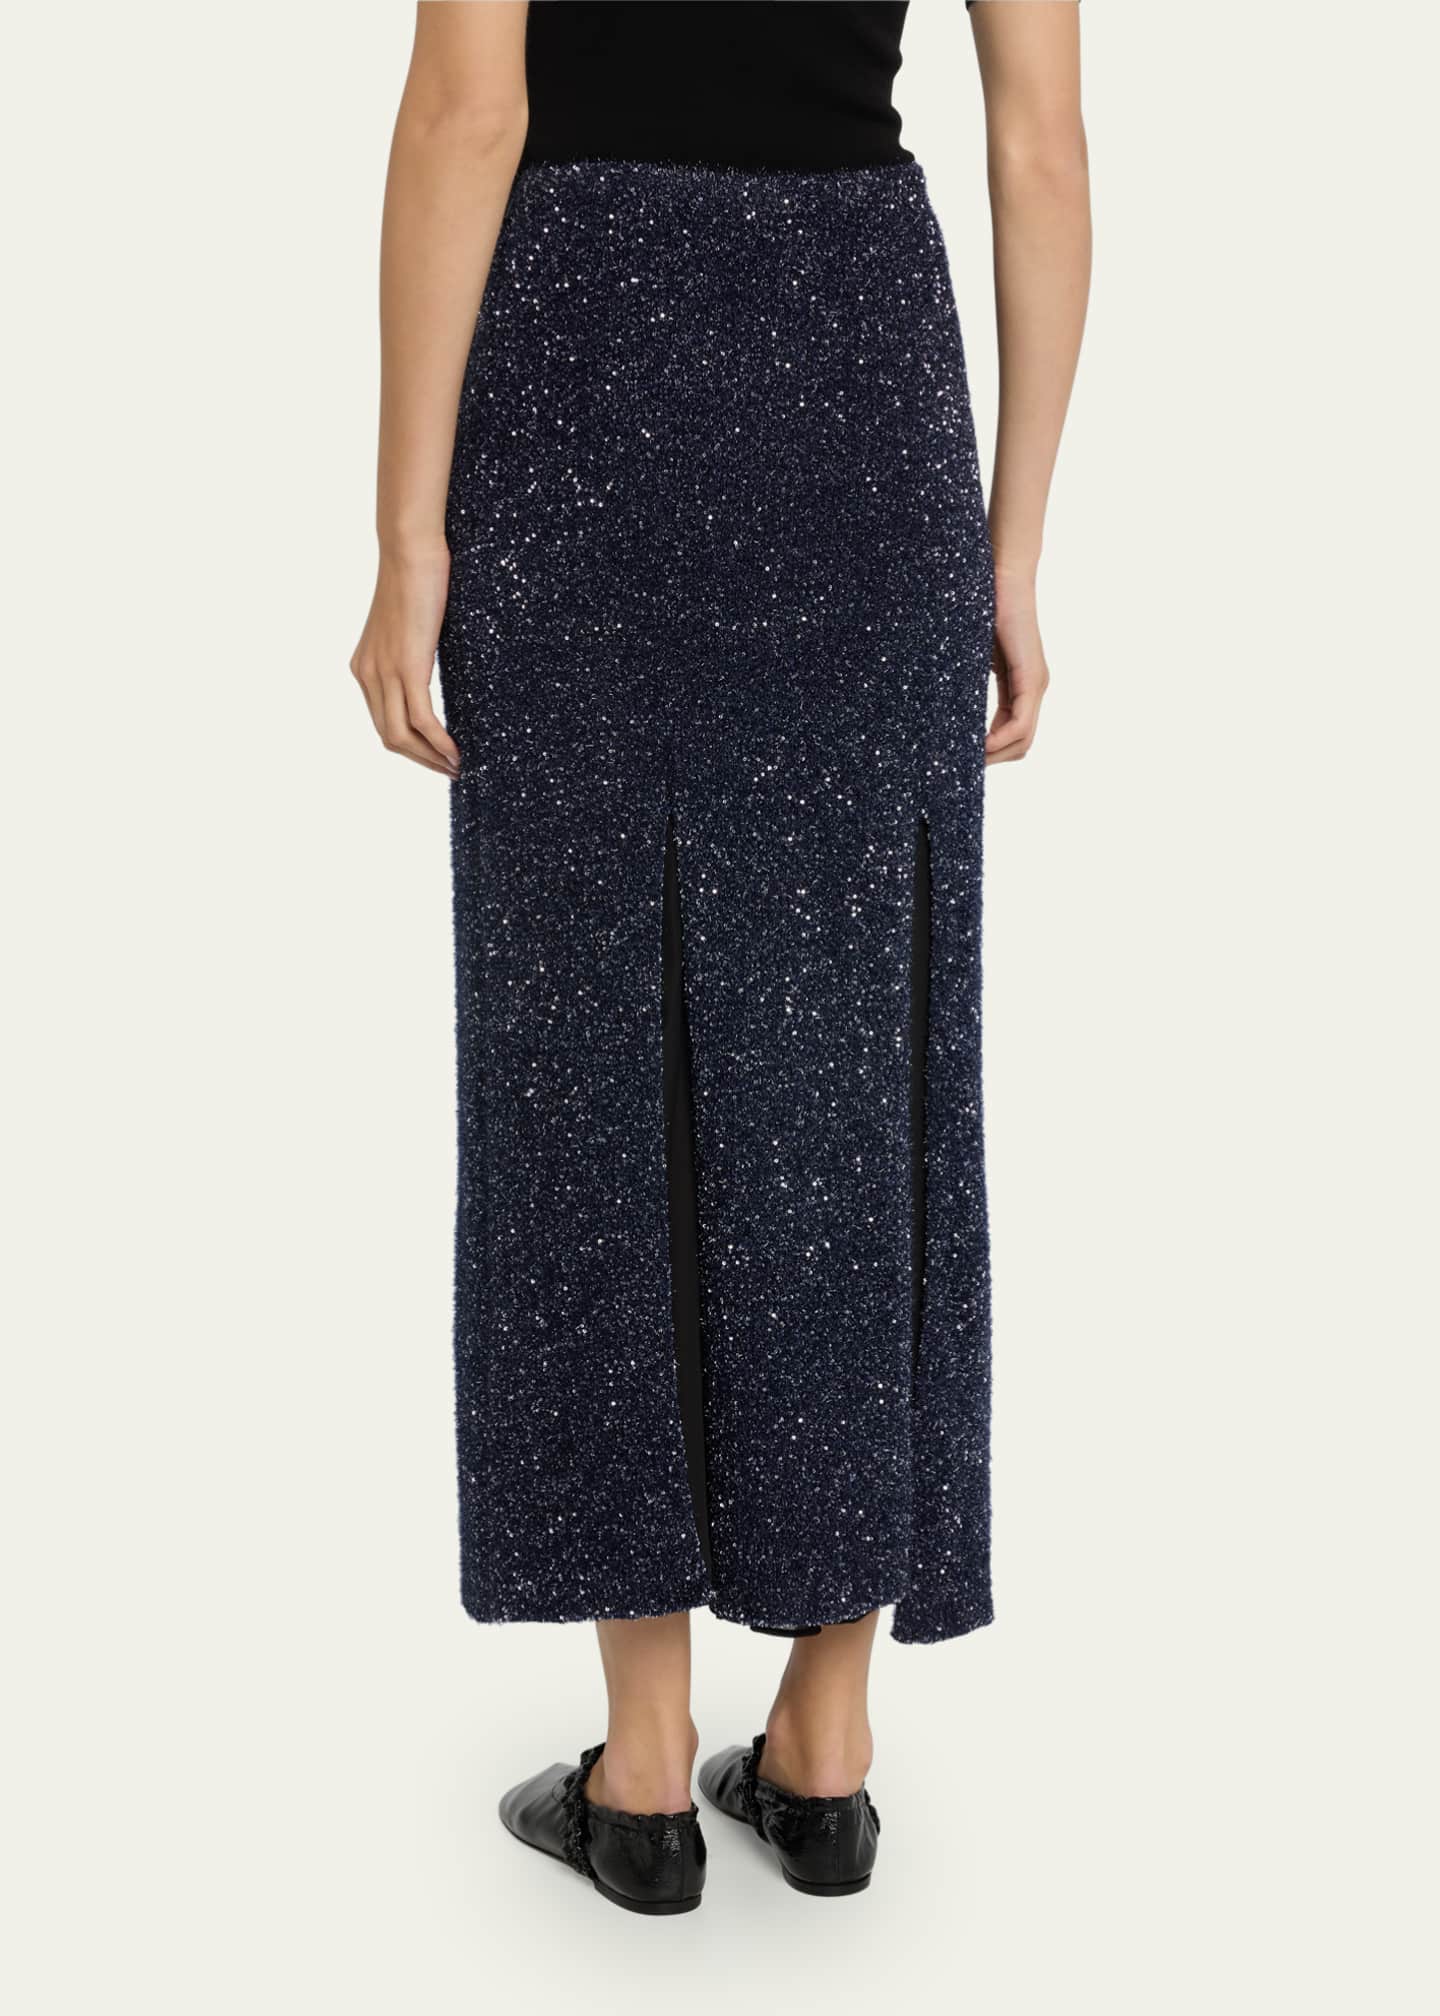 Proenza Schouler Technical Sequin Knit Slit Skirt - Bergdorf Goodman